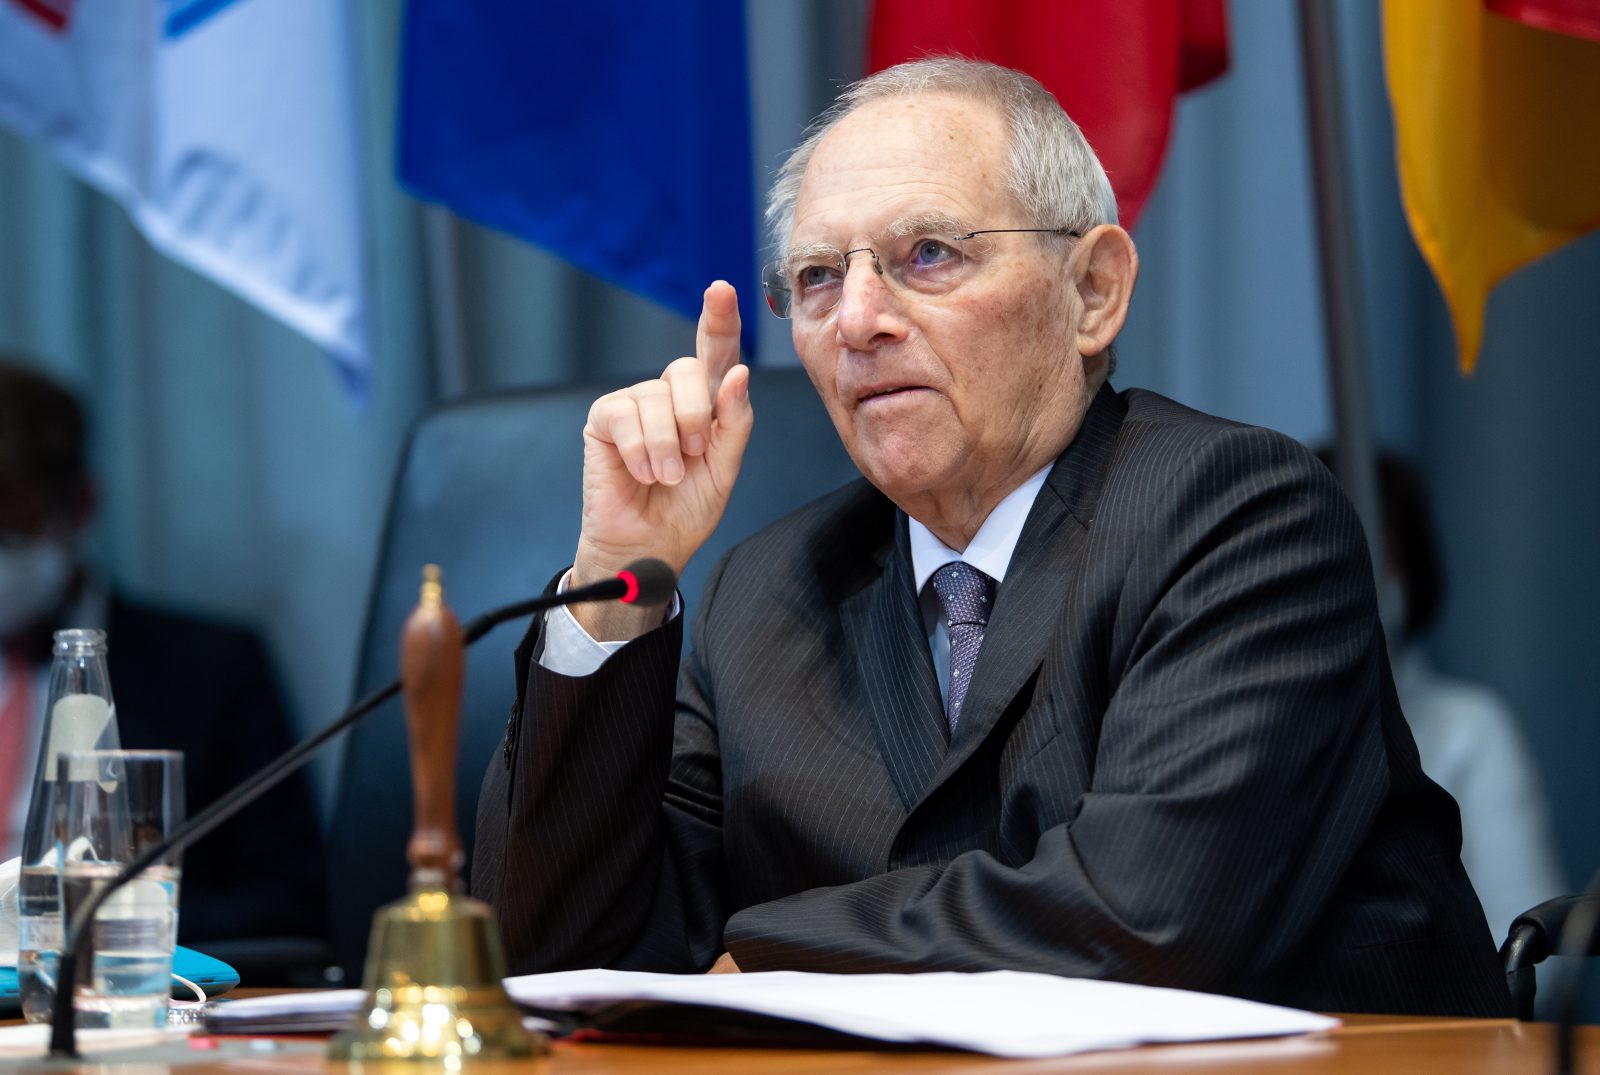 Bundestagspräsident Wolfgang Schäuble: „Erst sind es Worte, und am Ende sind es Taten gegen Minderheiten“